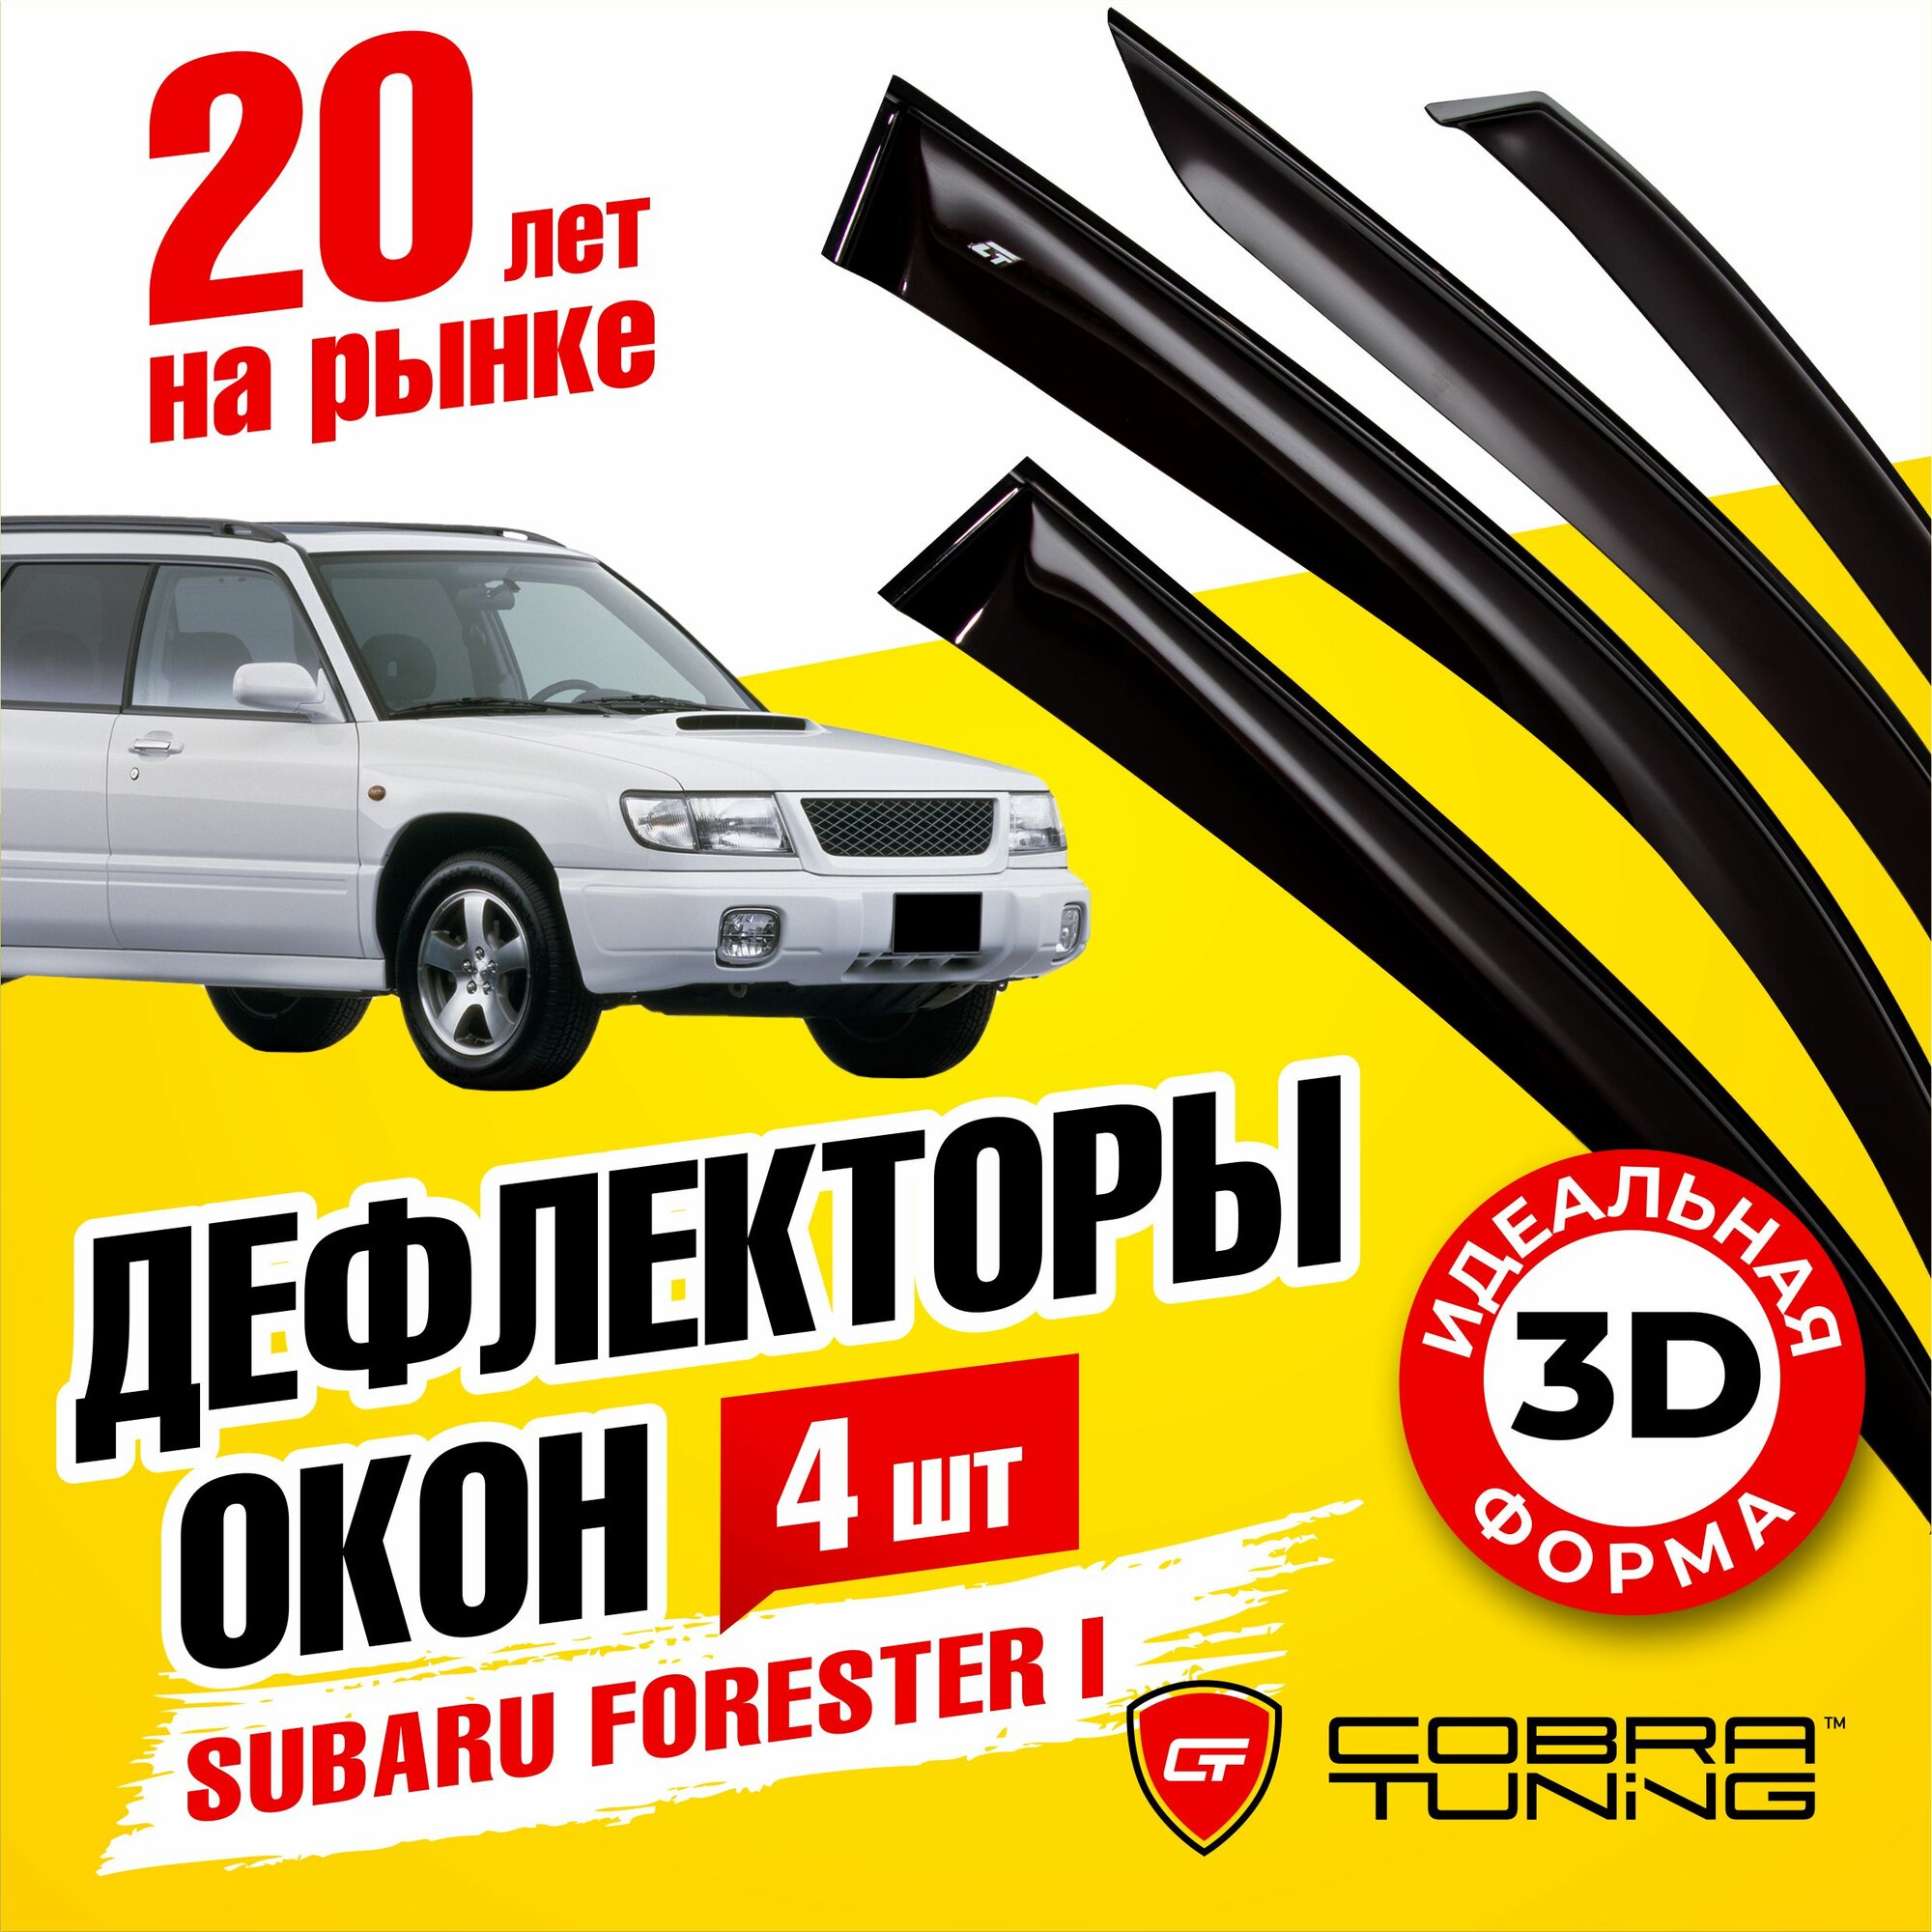 Дефлекторы боковых окон для Subaru Forester 1 (Субару Форестер) 1997-2002 ветровики с хром молдингом Cobra Tuning